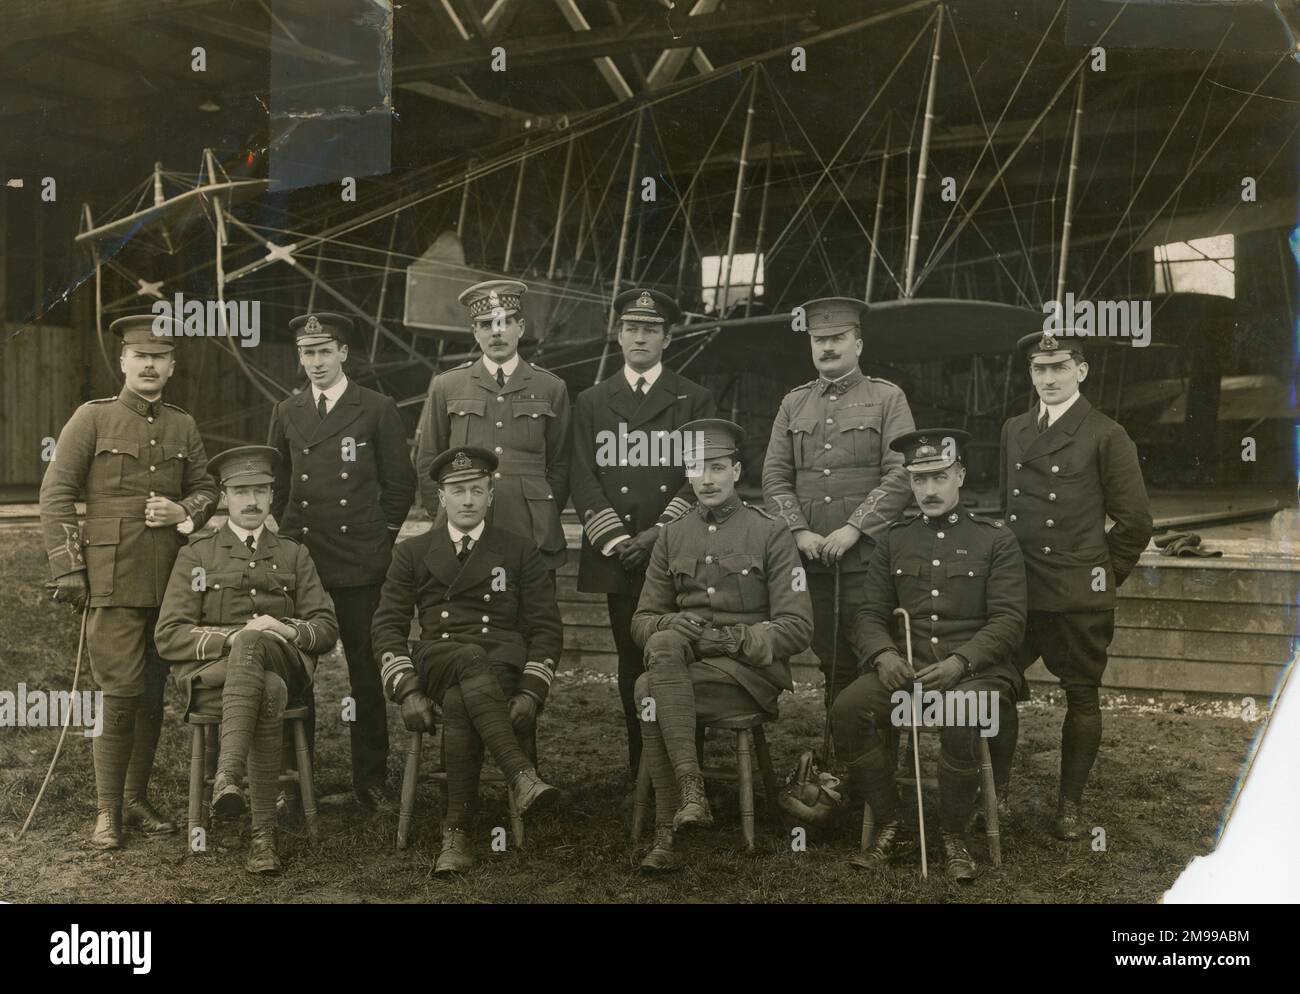 Central Flying School, Upavon, janvier 1913. De gauche à droite : Capt E.G.R. (debout) Lithgow, Asst Paymaster J.H. Lidnderson RN, major H.M. Trenchard DSO, Capt G.M. Paine MVO RN, Lt et QR M. F.H. Firby VC et Eng Lt C. Randall. (Assis) Capt J.D.B. Fulton, Lt A.M. Longmore RN, Capt J.M. Salmond et le major E.L. Gerrard. Banque D'Images